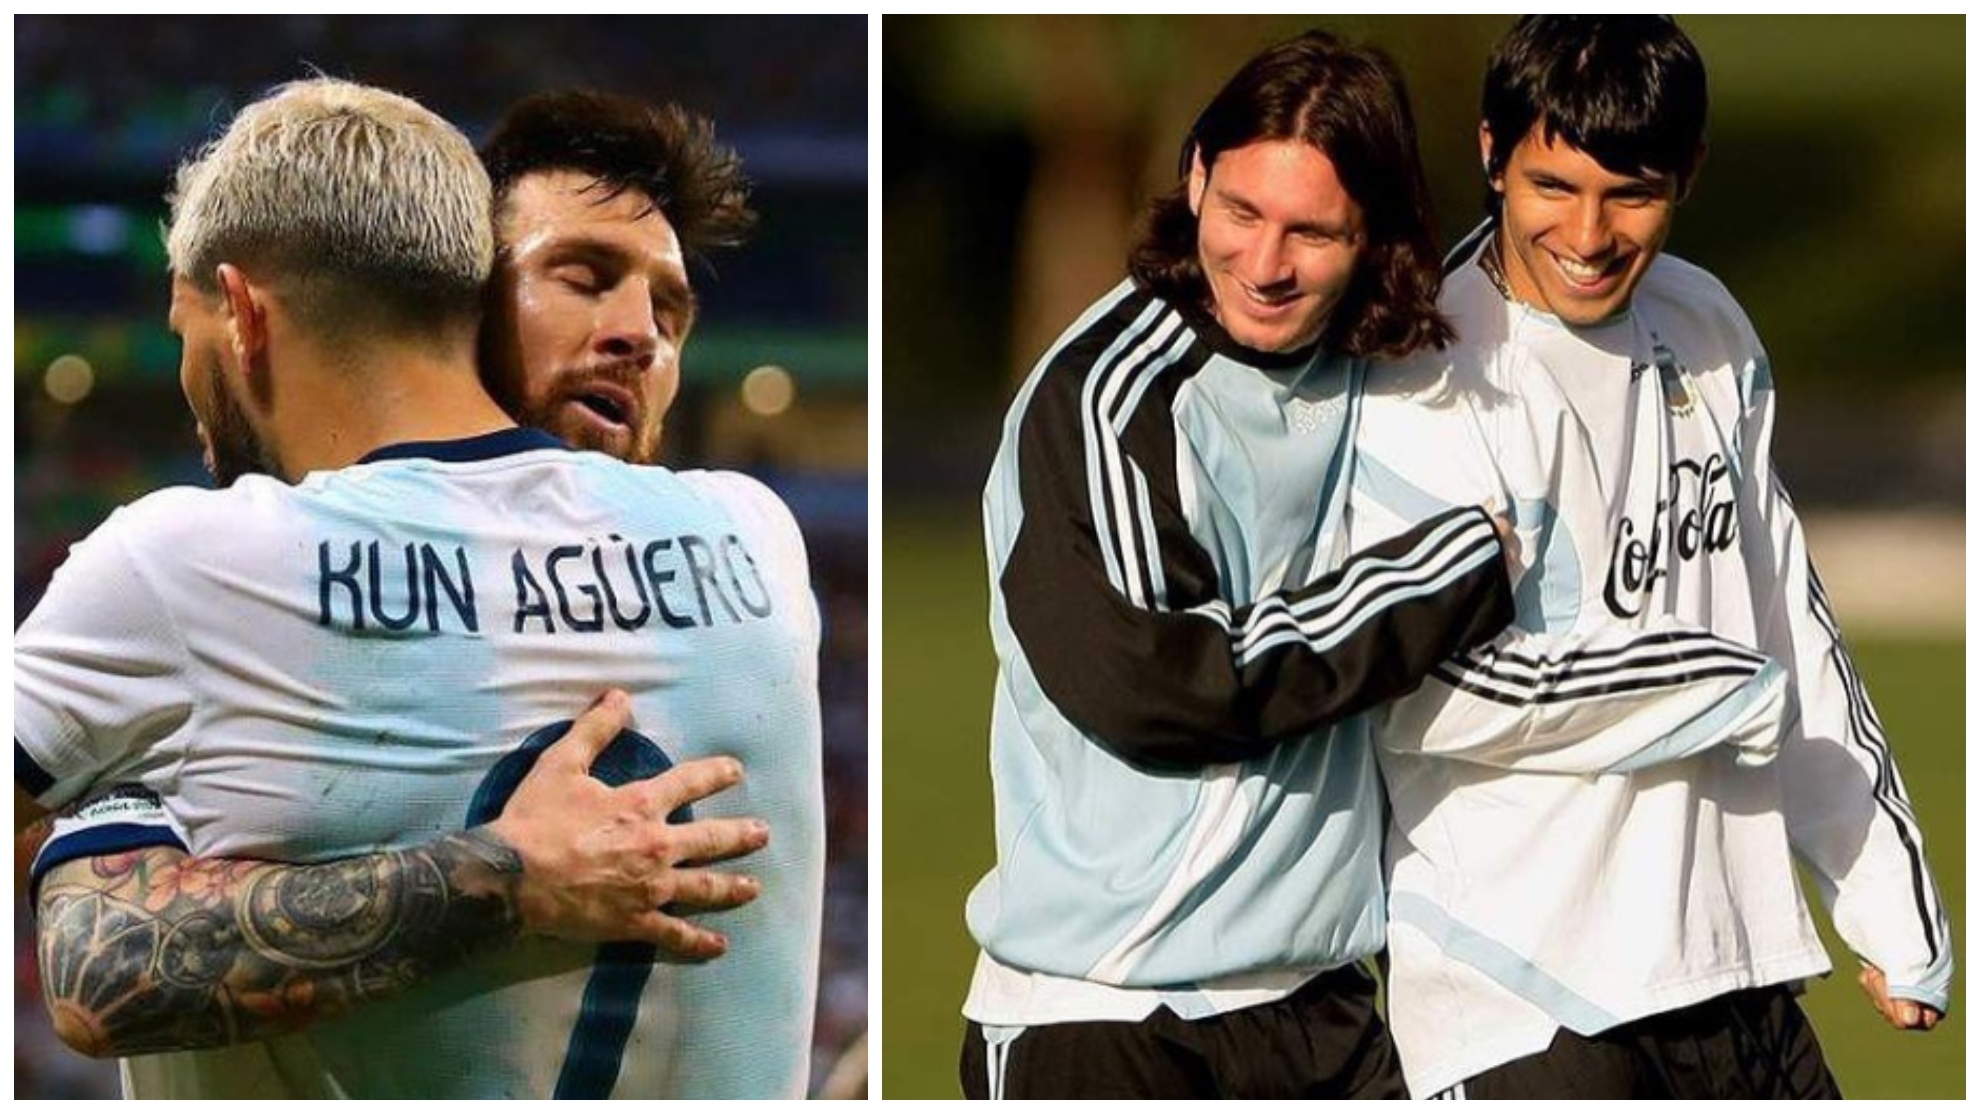 La emotiva carta de Messi al Kun Agüero: "Duele mucho ver como tienes que dejar de hacer lo que más te gusta"